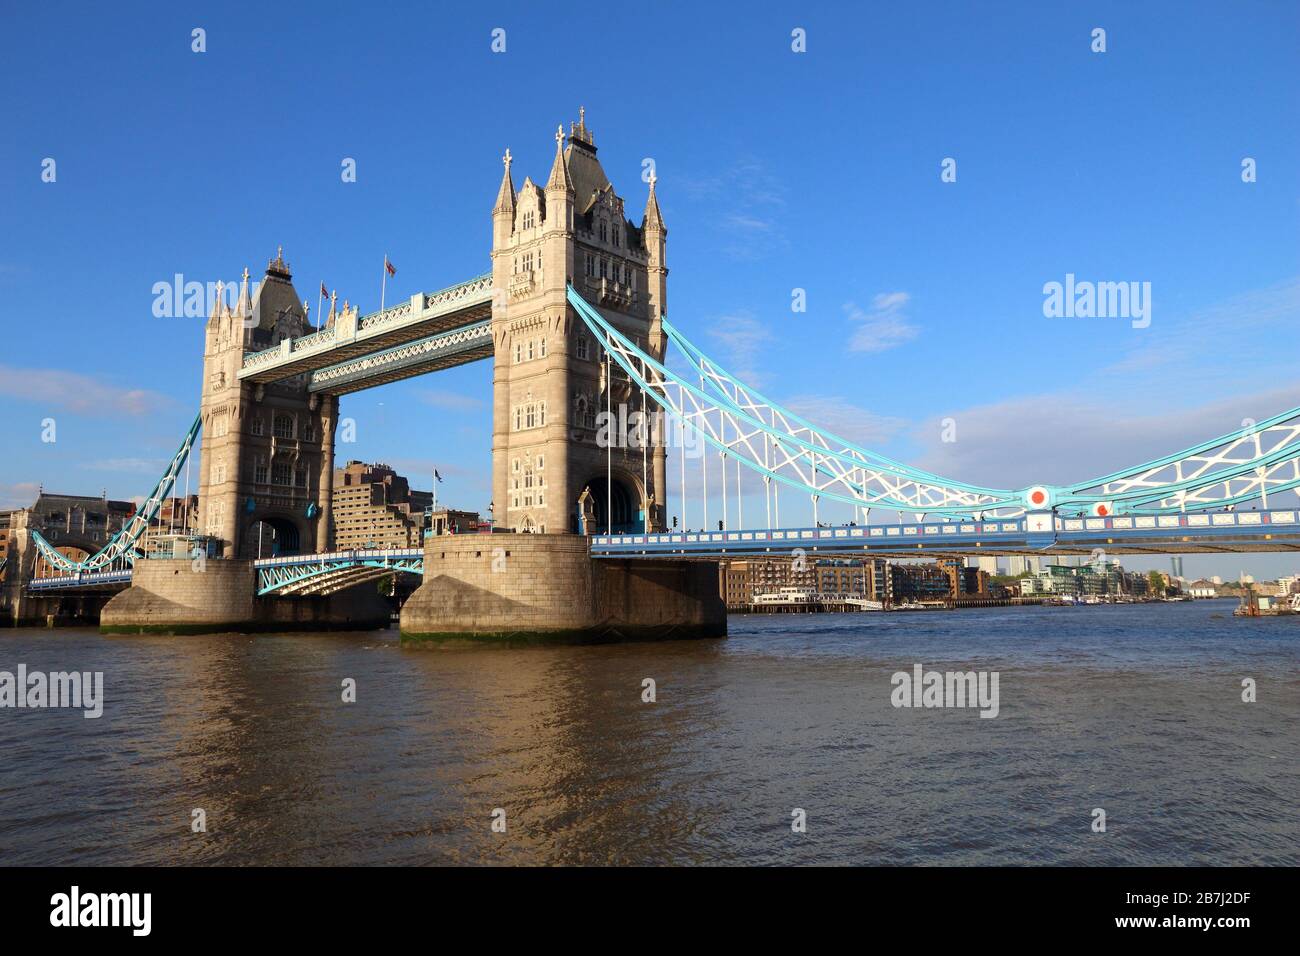 Tower Bridge - Wahrzeichen in London, Großbritannien. Wahrzeichen Londons. Stockfoto